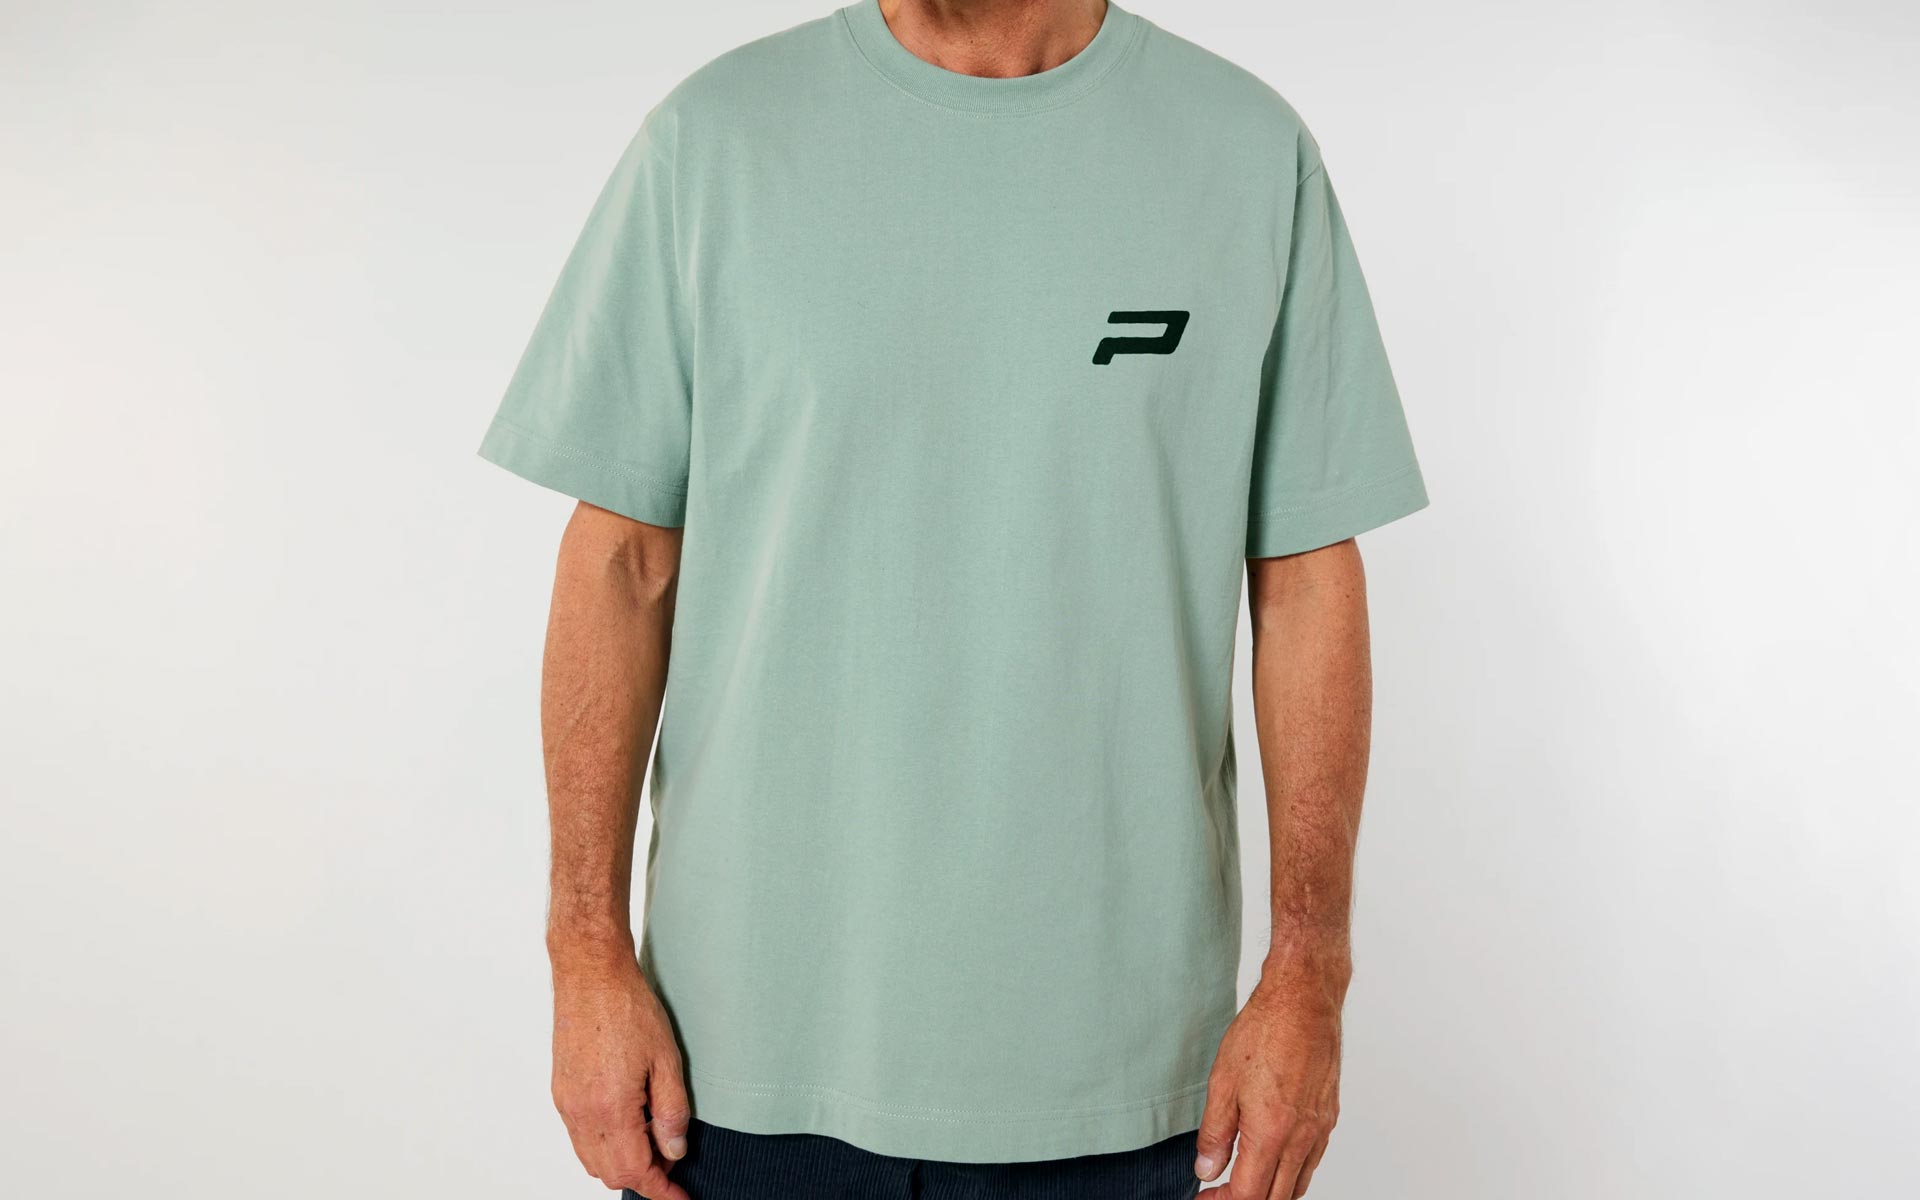 Powerbrick merchandise shirt green caferacer